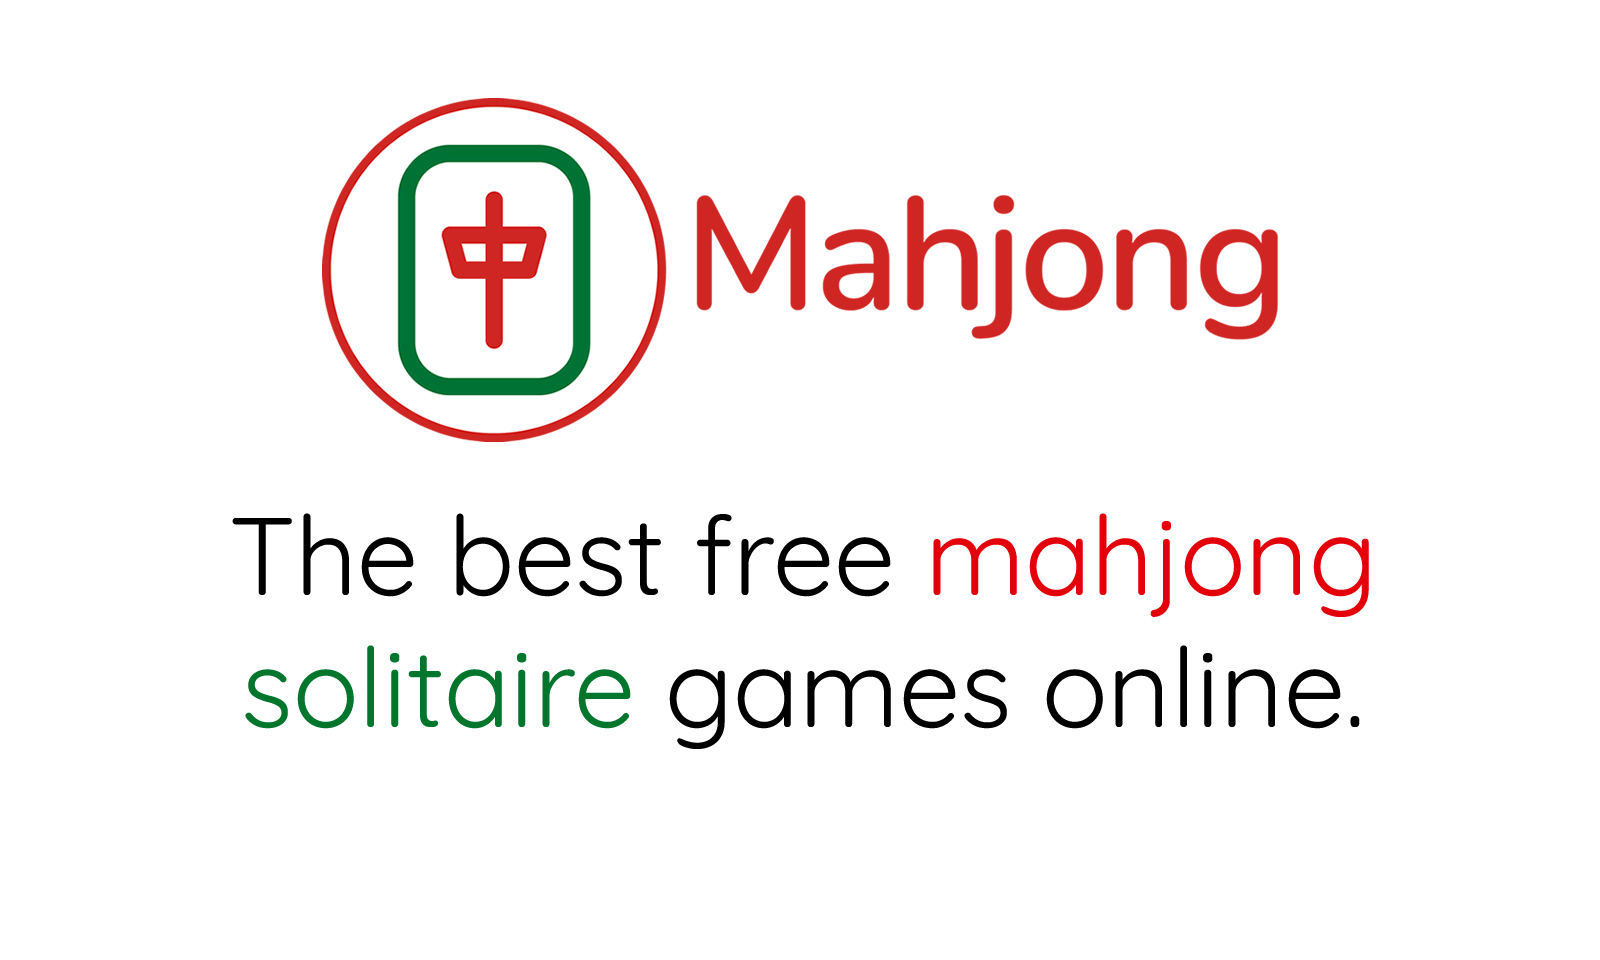 Mahjong Slidon (Mahjong Resbaladizo) juega Mahjong pantalla completa!